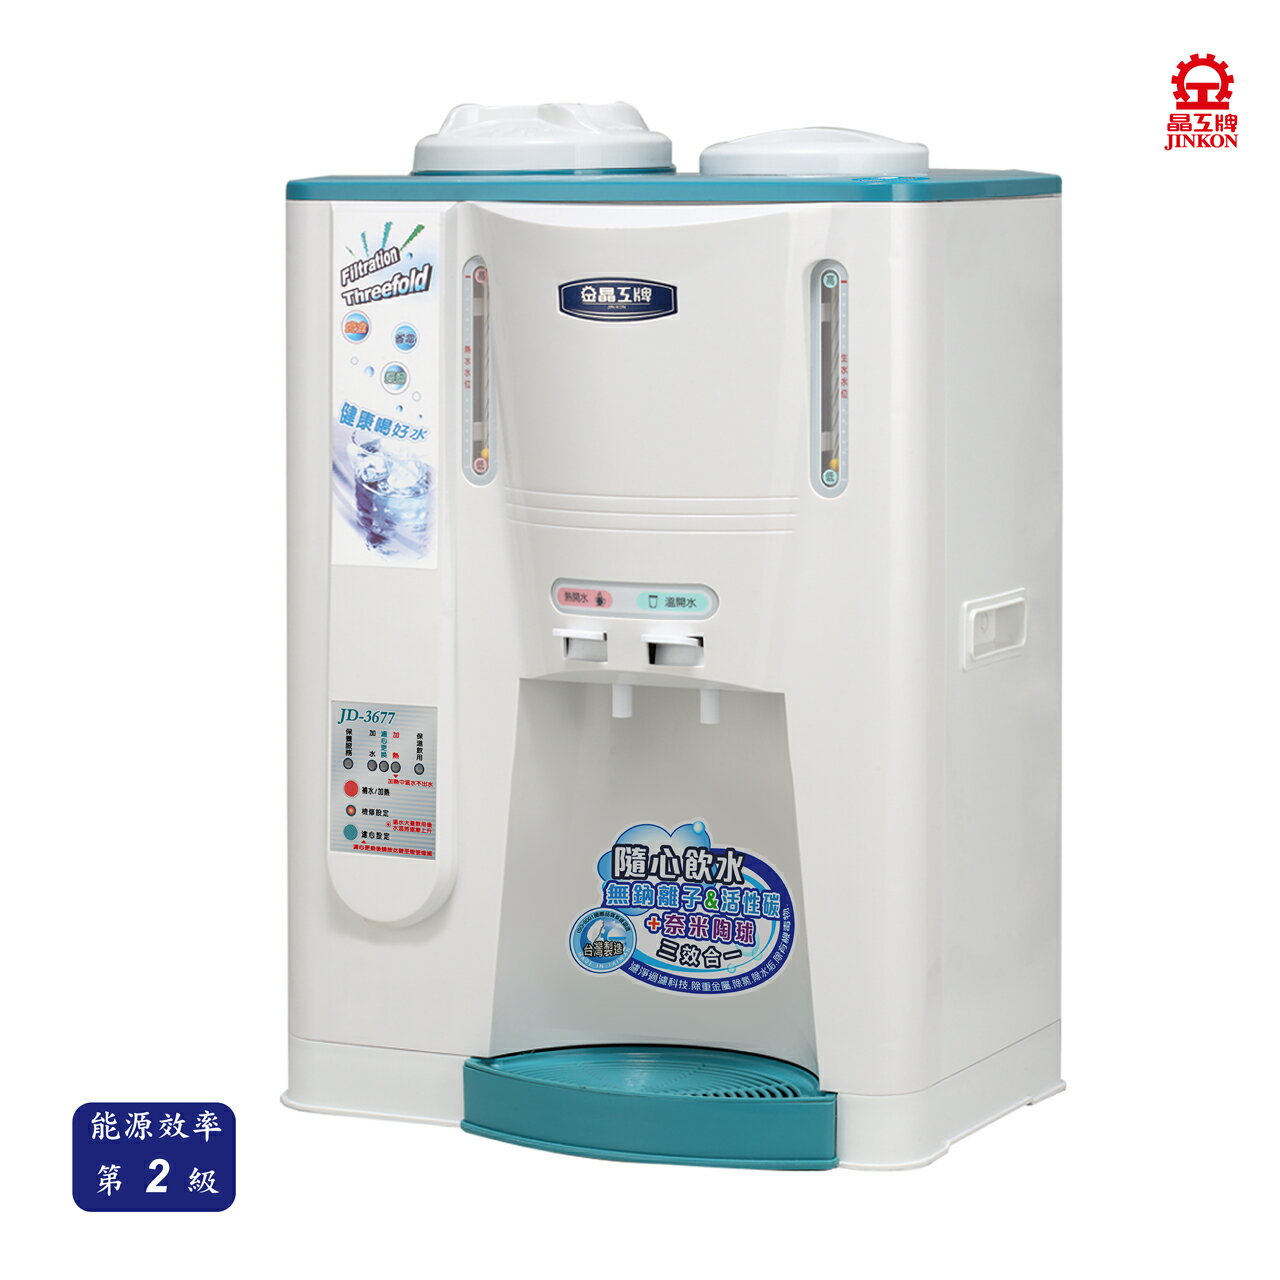 【晶工牌】JD-3677溫熱全自動開飲機(飲水機) 10.5L